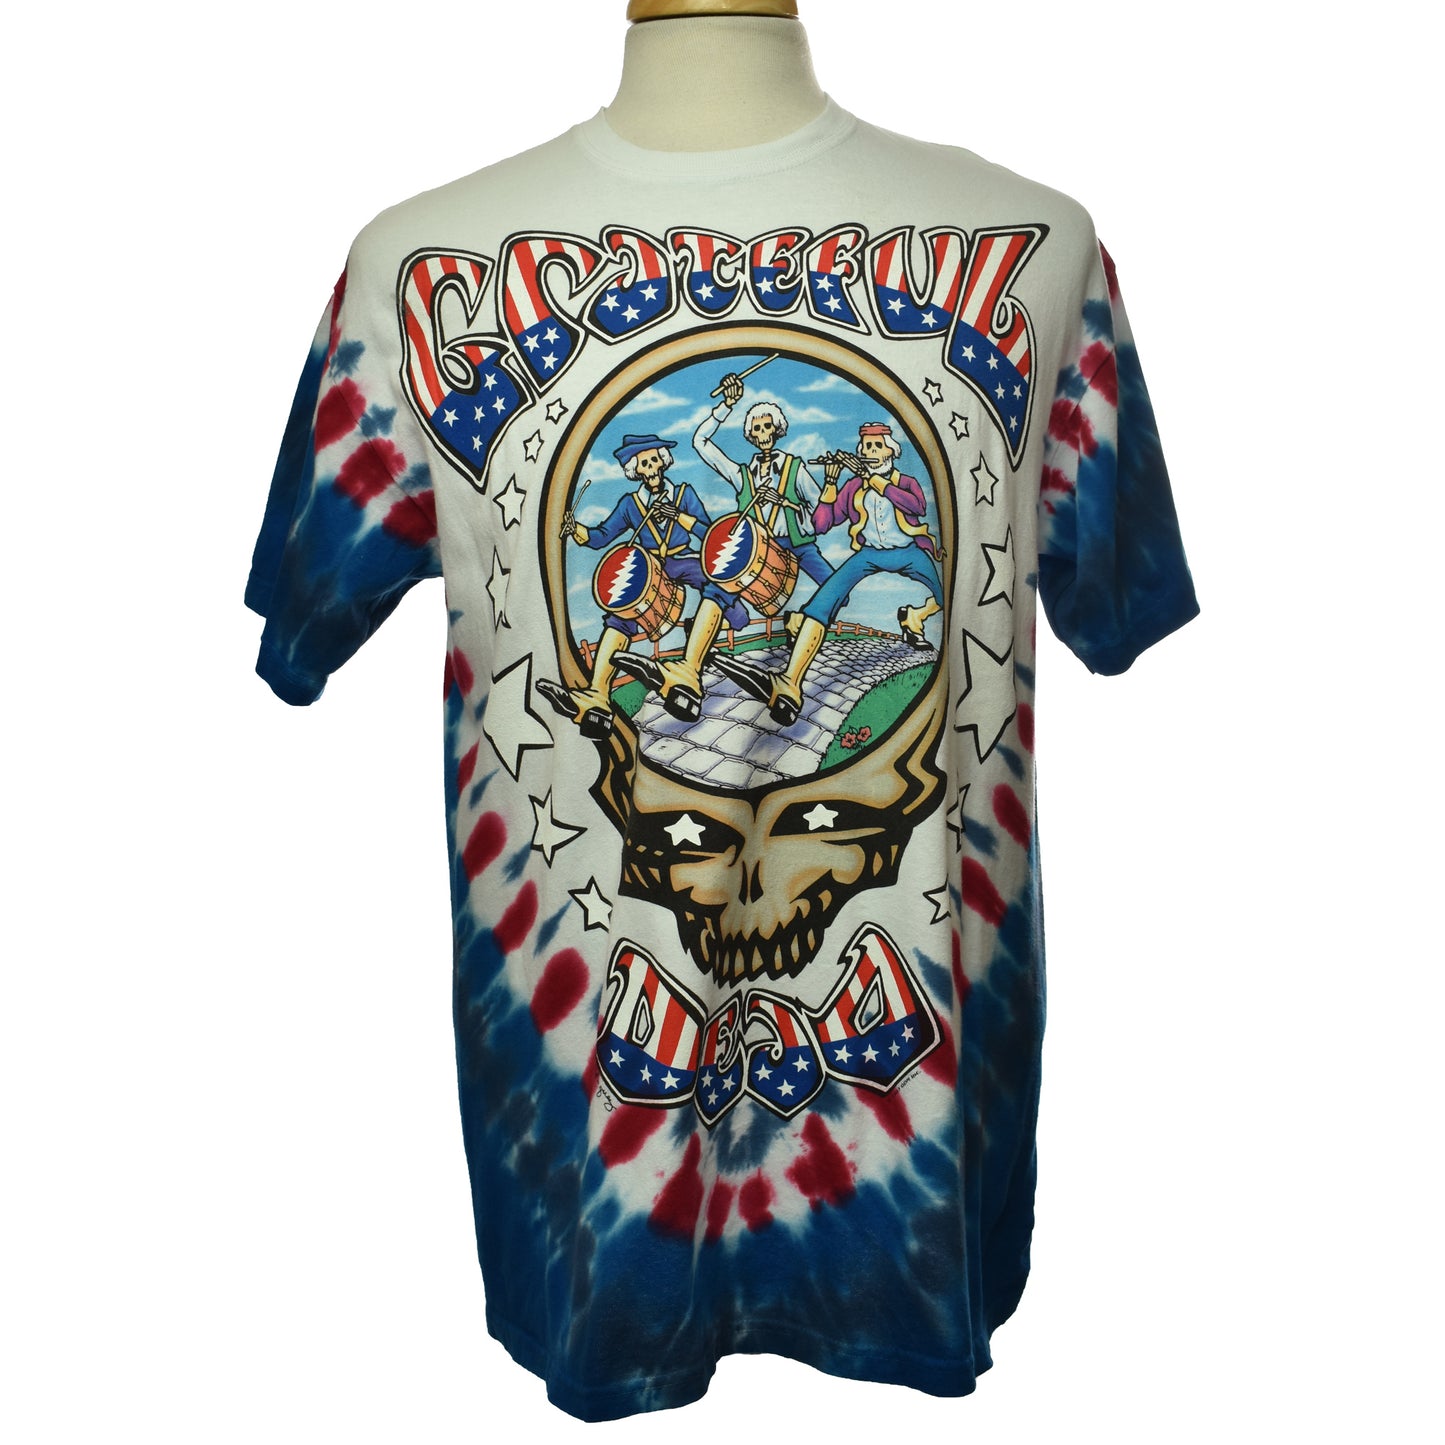 Vintage Grateful Dead Wave That Flag Shirt Size XL Liquid Blue Tie Dye